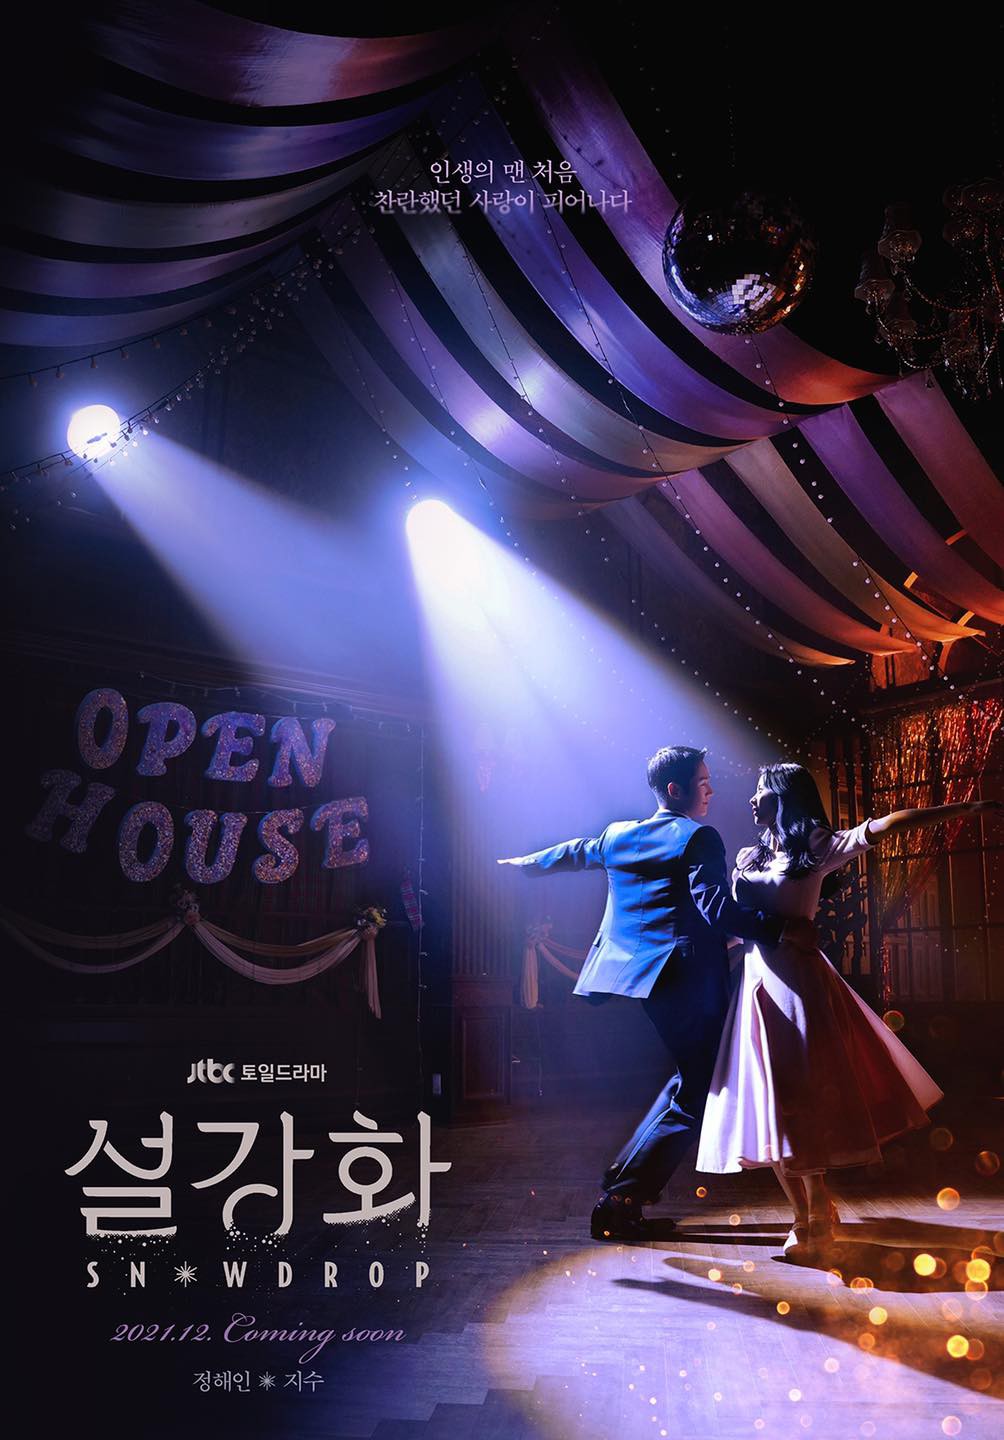 Phim Snowdrop của Jisoo (BLACKPINK) và Jung Hae In công bố poster và lịch phát sóng chính thức